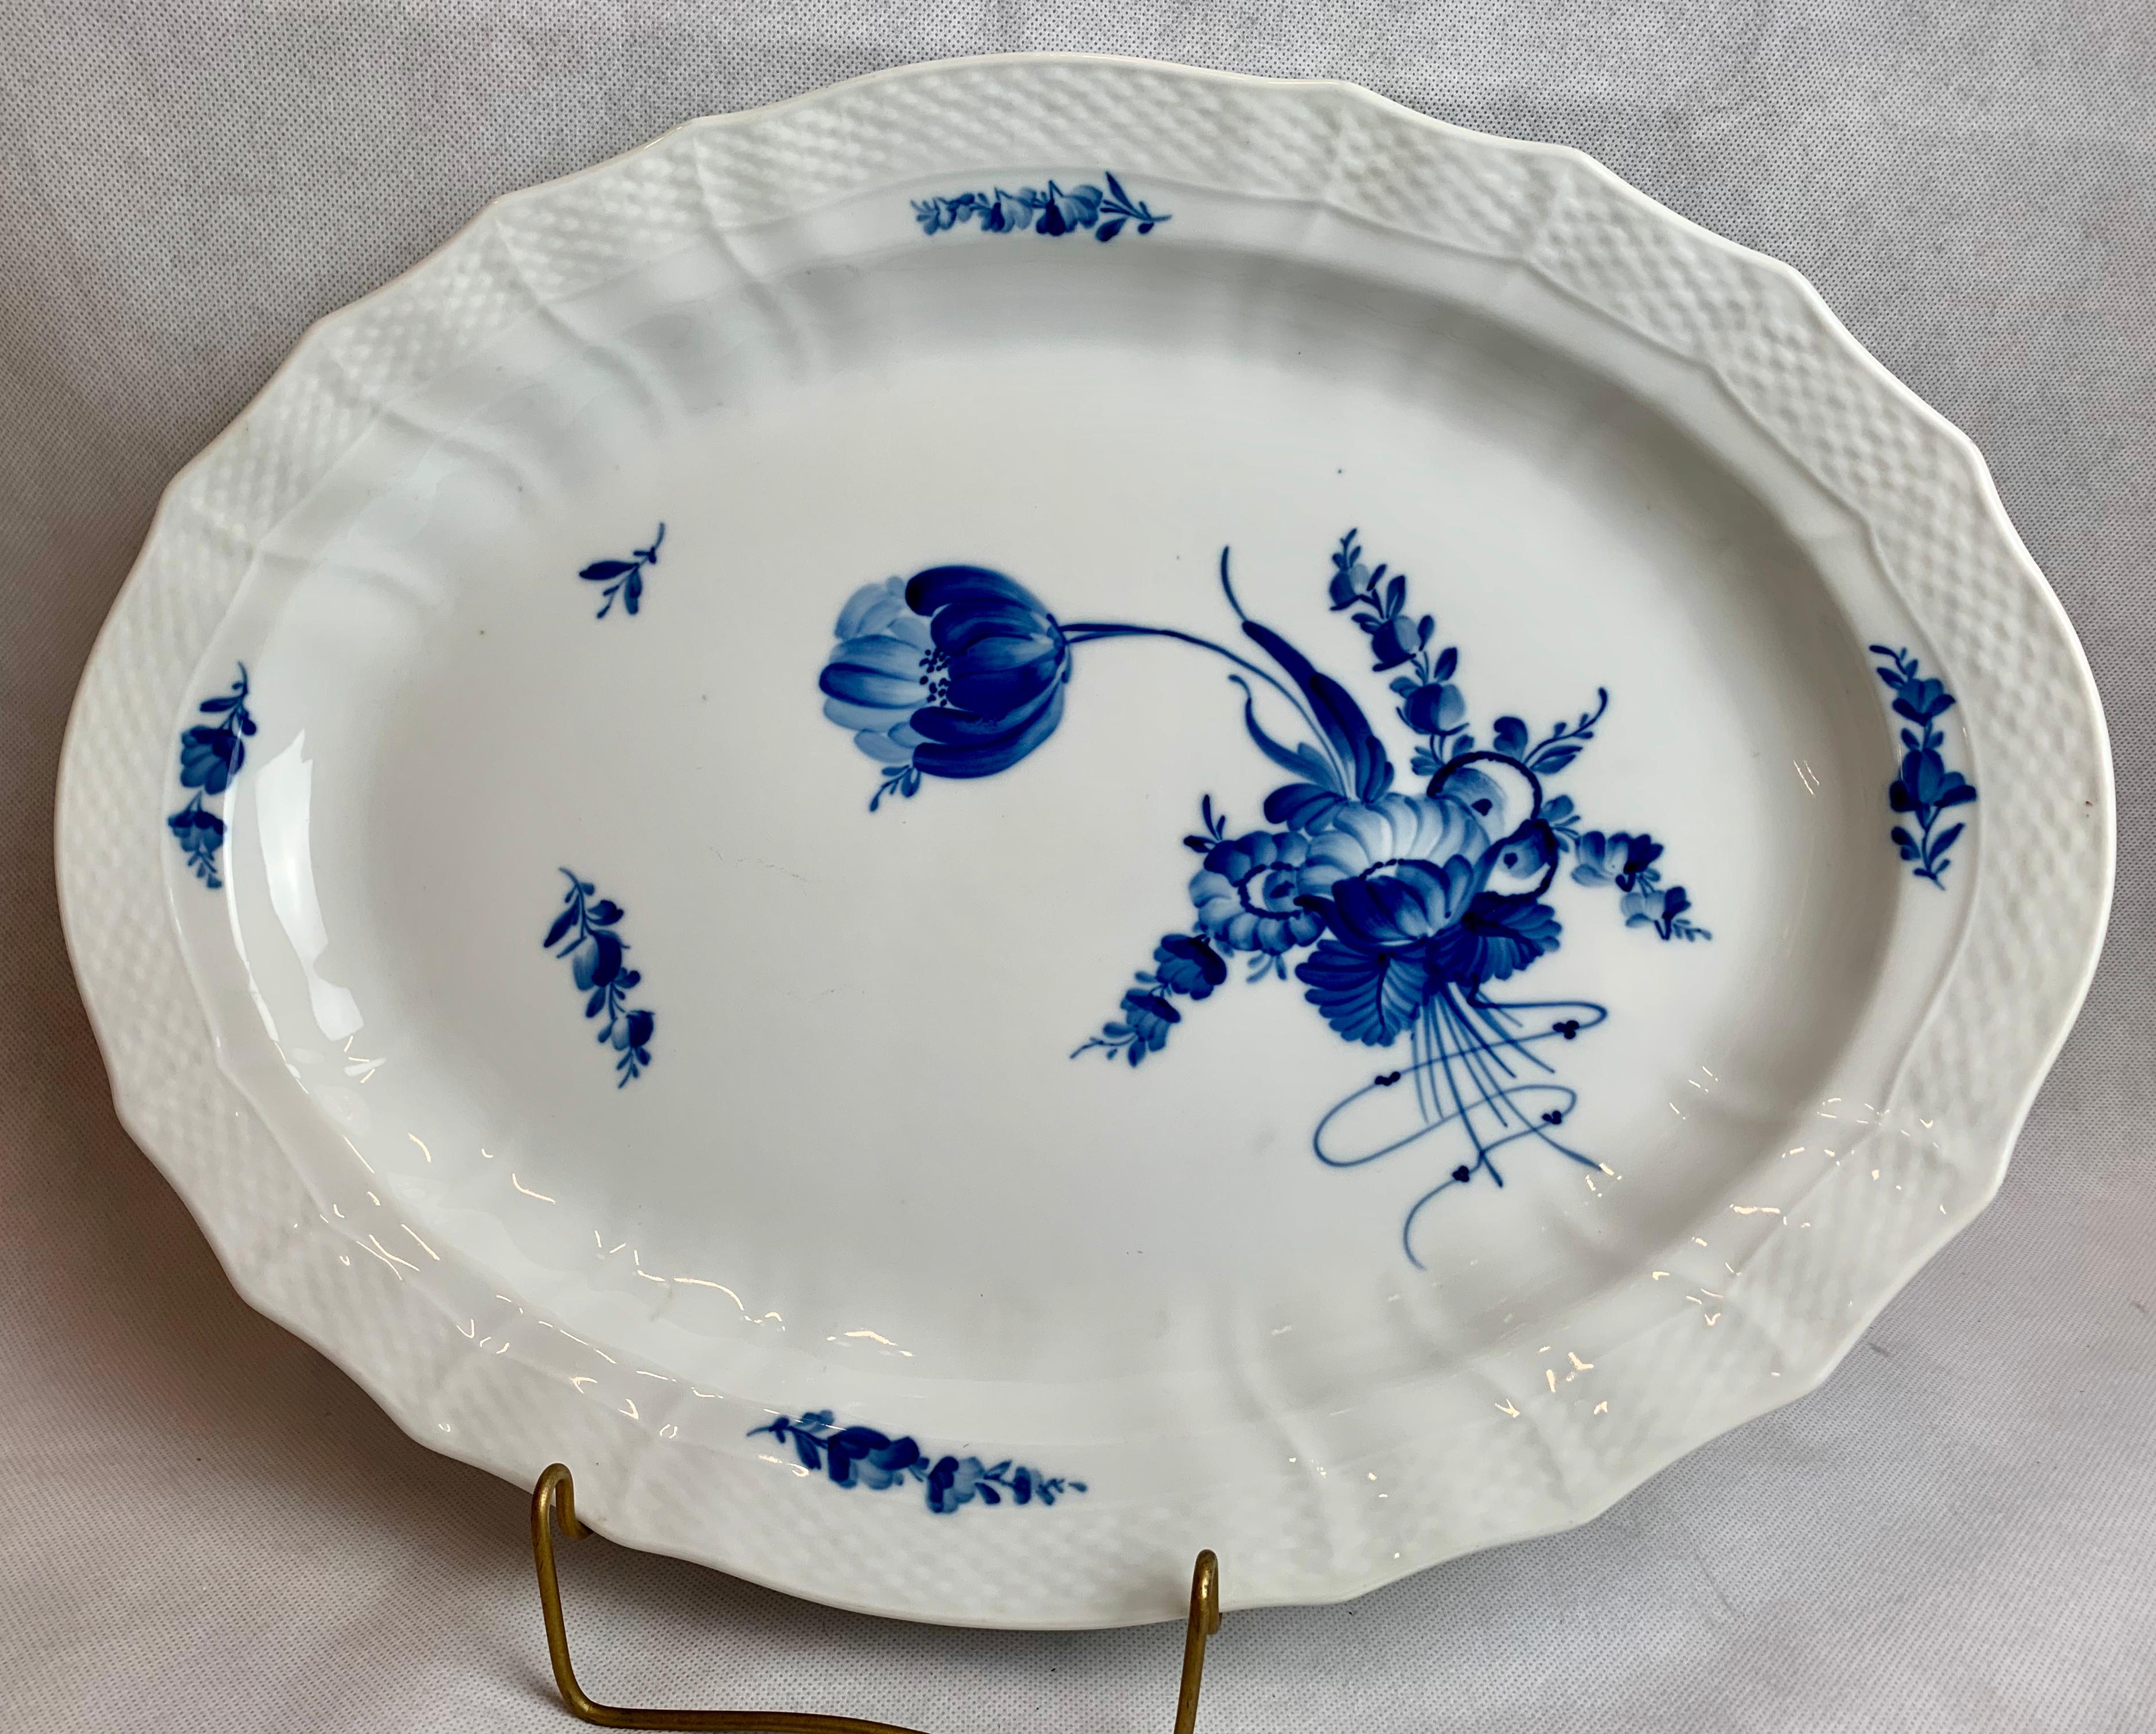  Royal Copenhagen Large Porcelain Platter in the Blue Flower Pattern 1